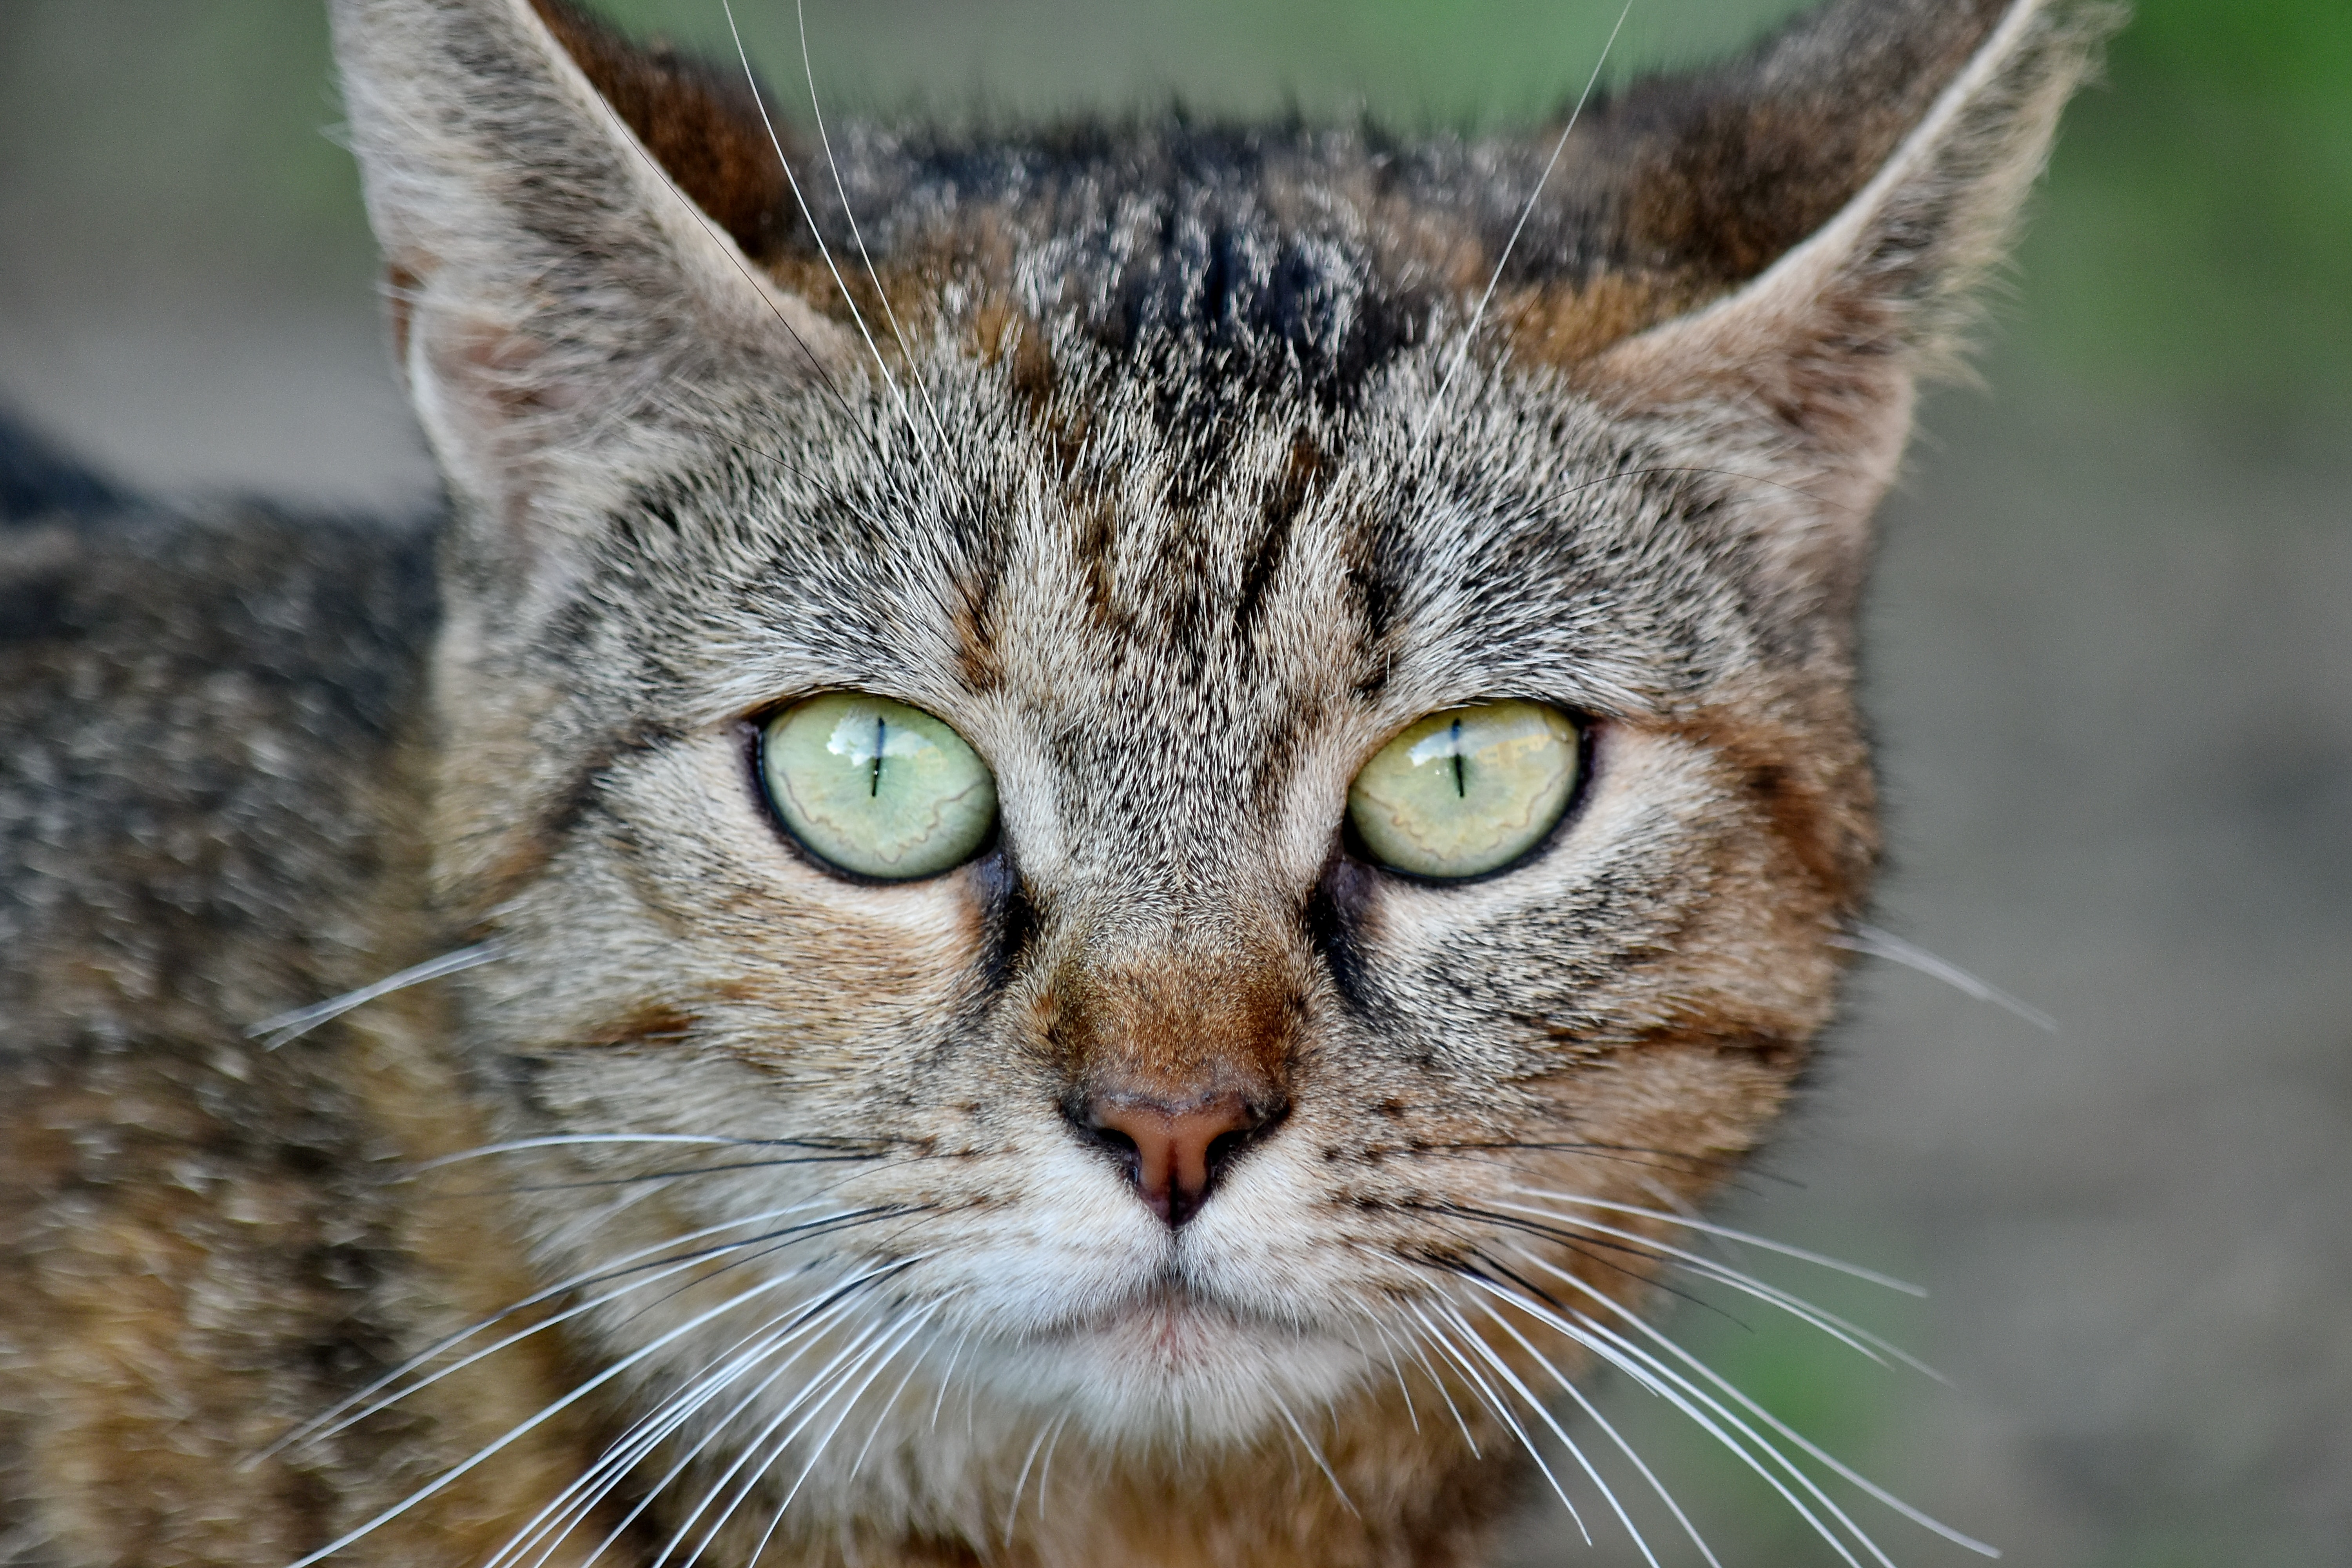 フリー写真画像 愛らしい 縦方向 Cat 目 ウィスカー ネコ科の動物 国内の猫 かわいい ストライプ猫 動物